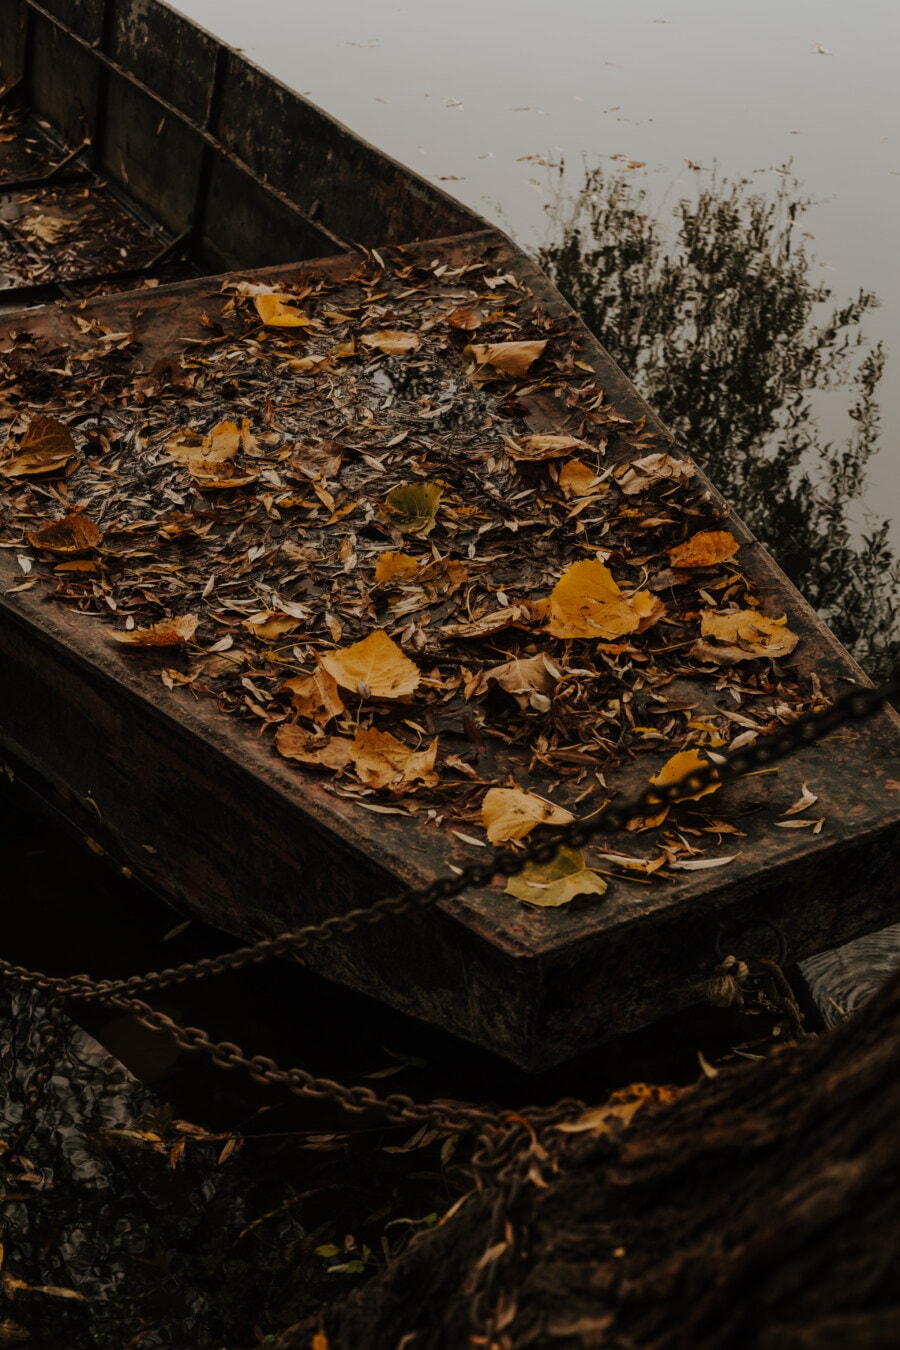 sông thuyền, thuyền, bị bỏ rơi, bơ vơ, phân rã, xác tàu đắm, mùa thu mùa, lá vàng, gỗ, ánh sáng